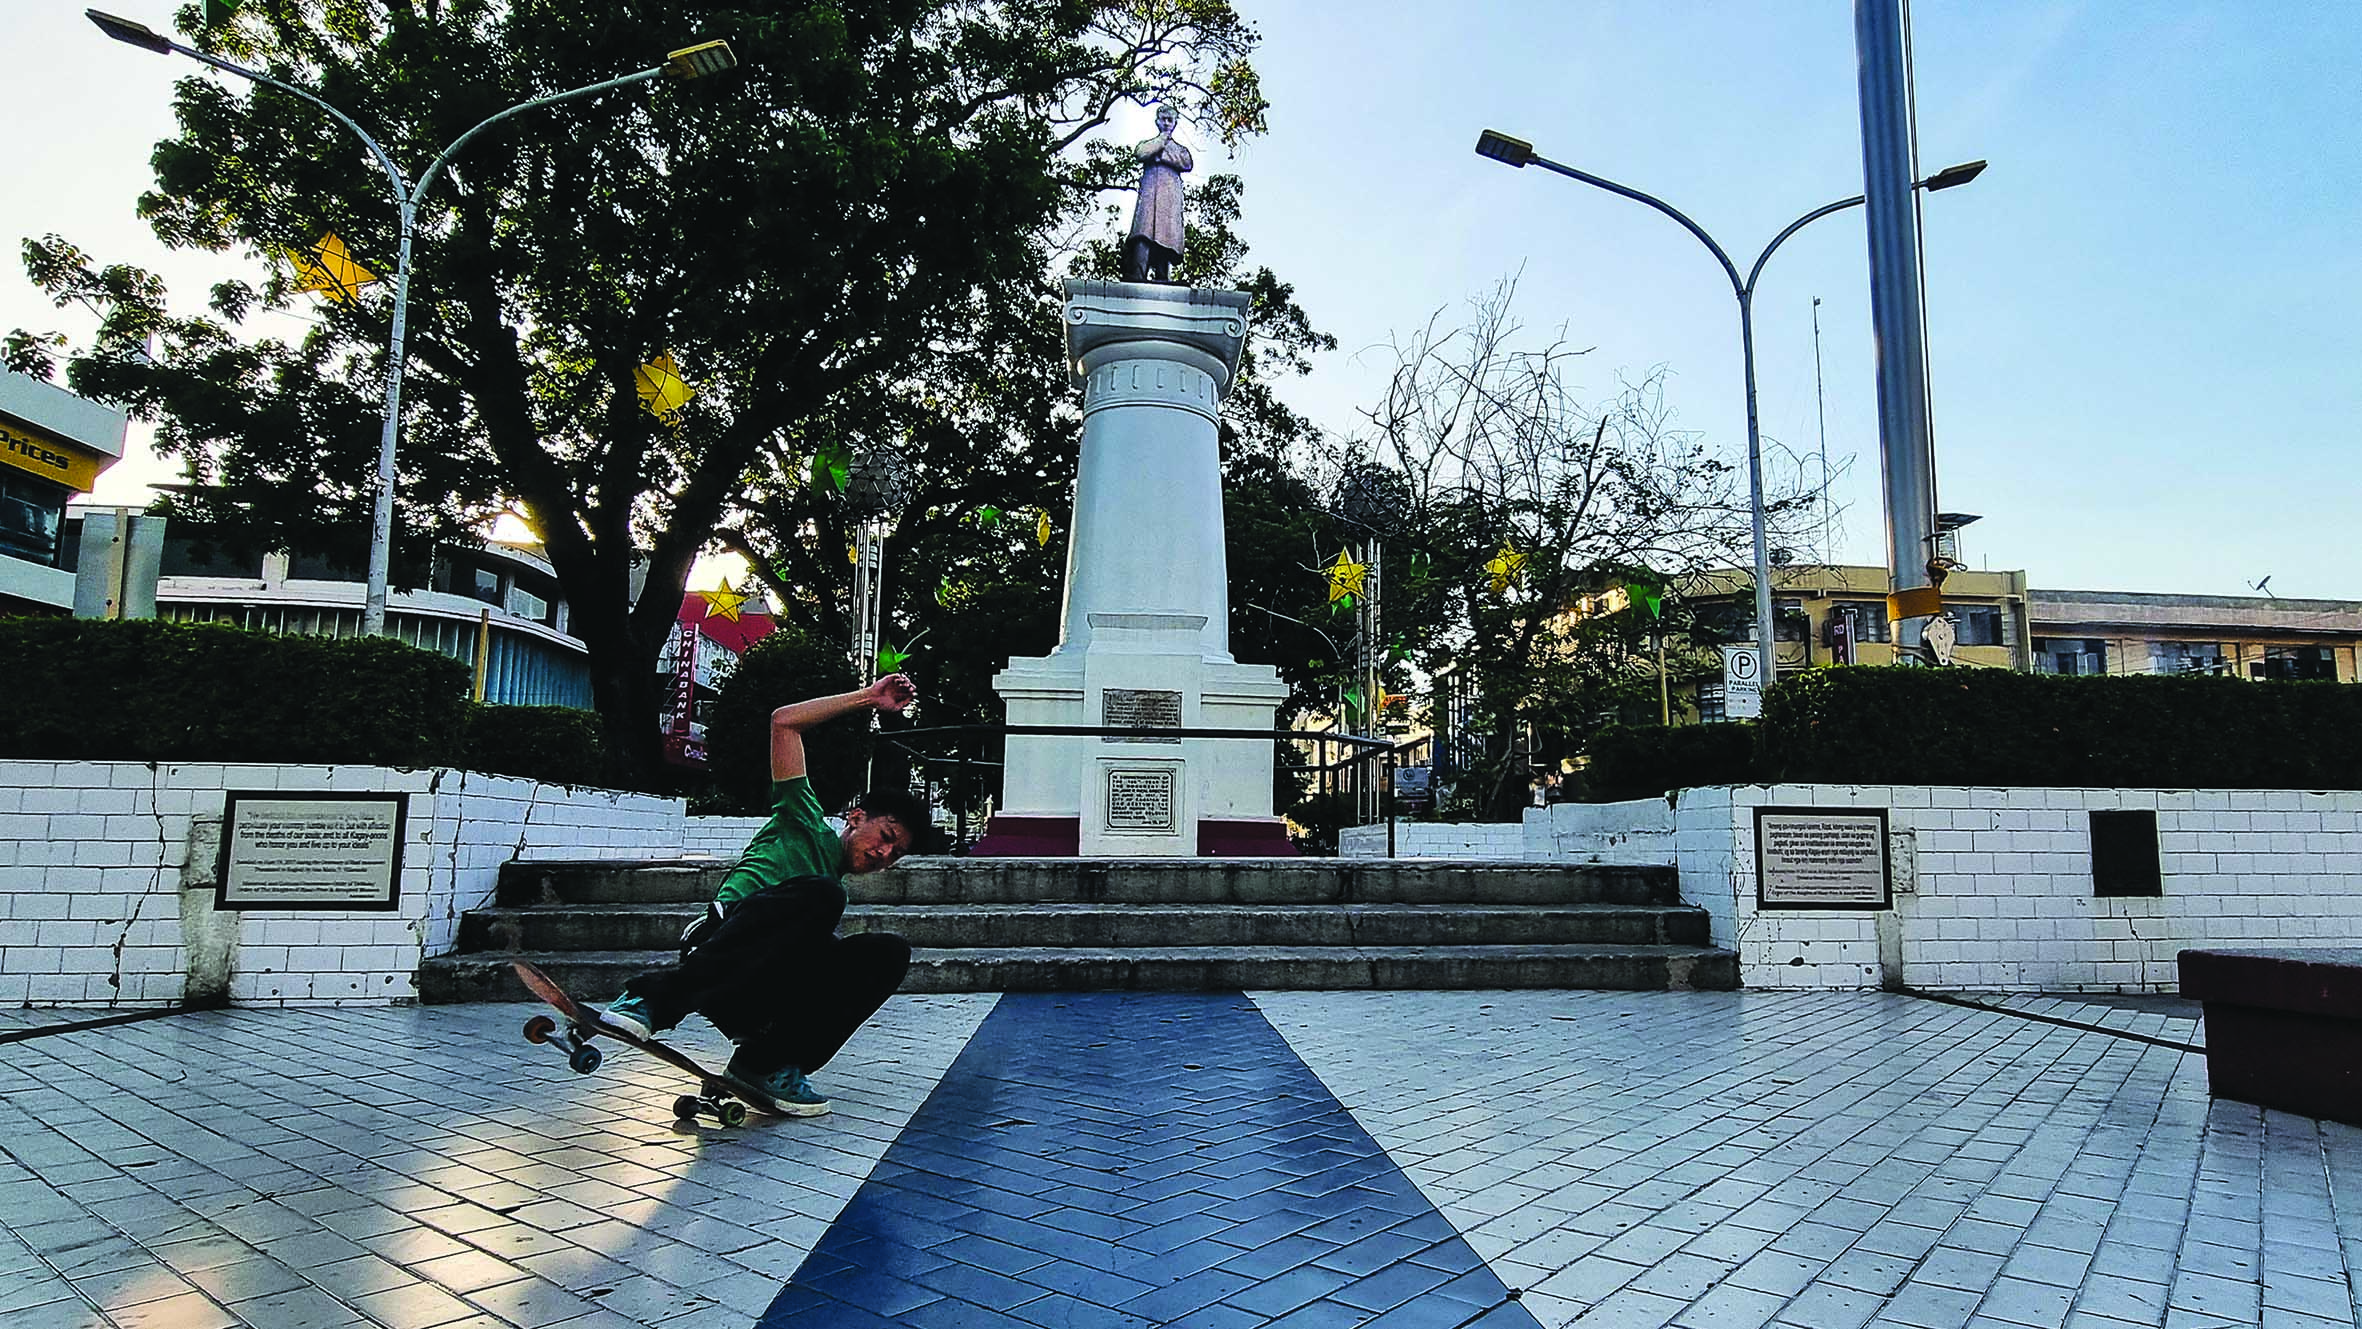 Rizal monument, in Plaza Divisoria